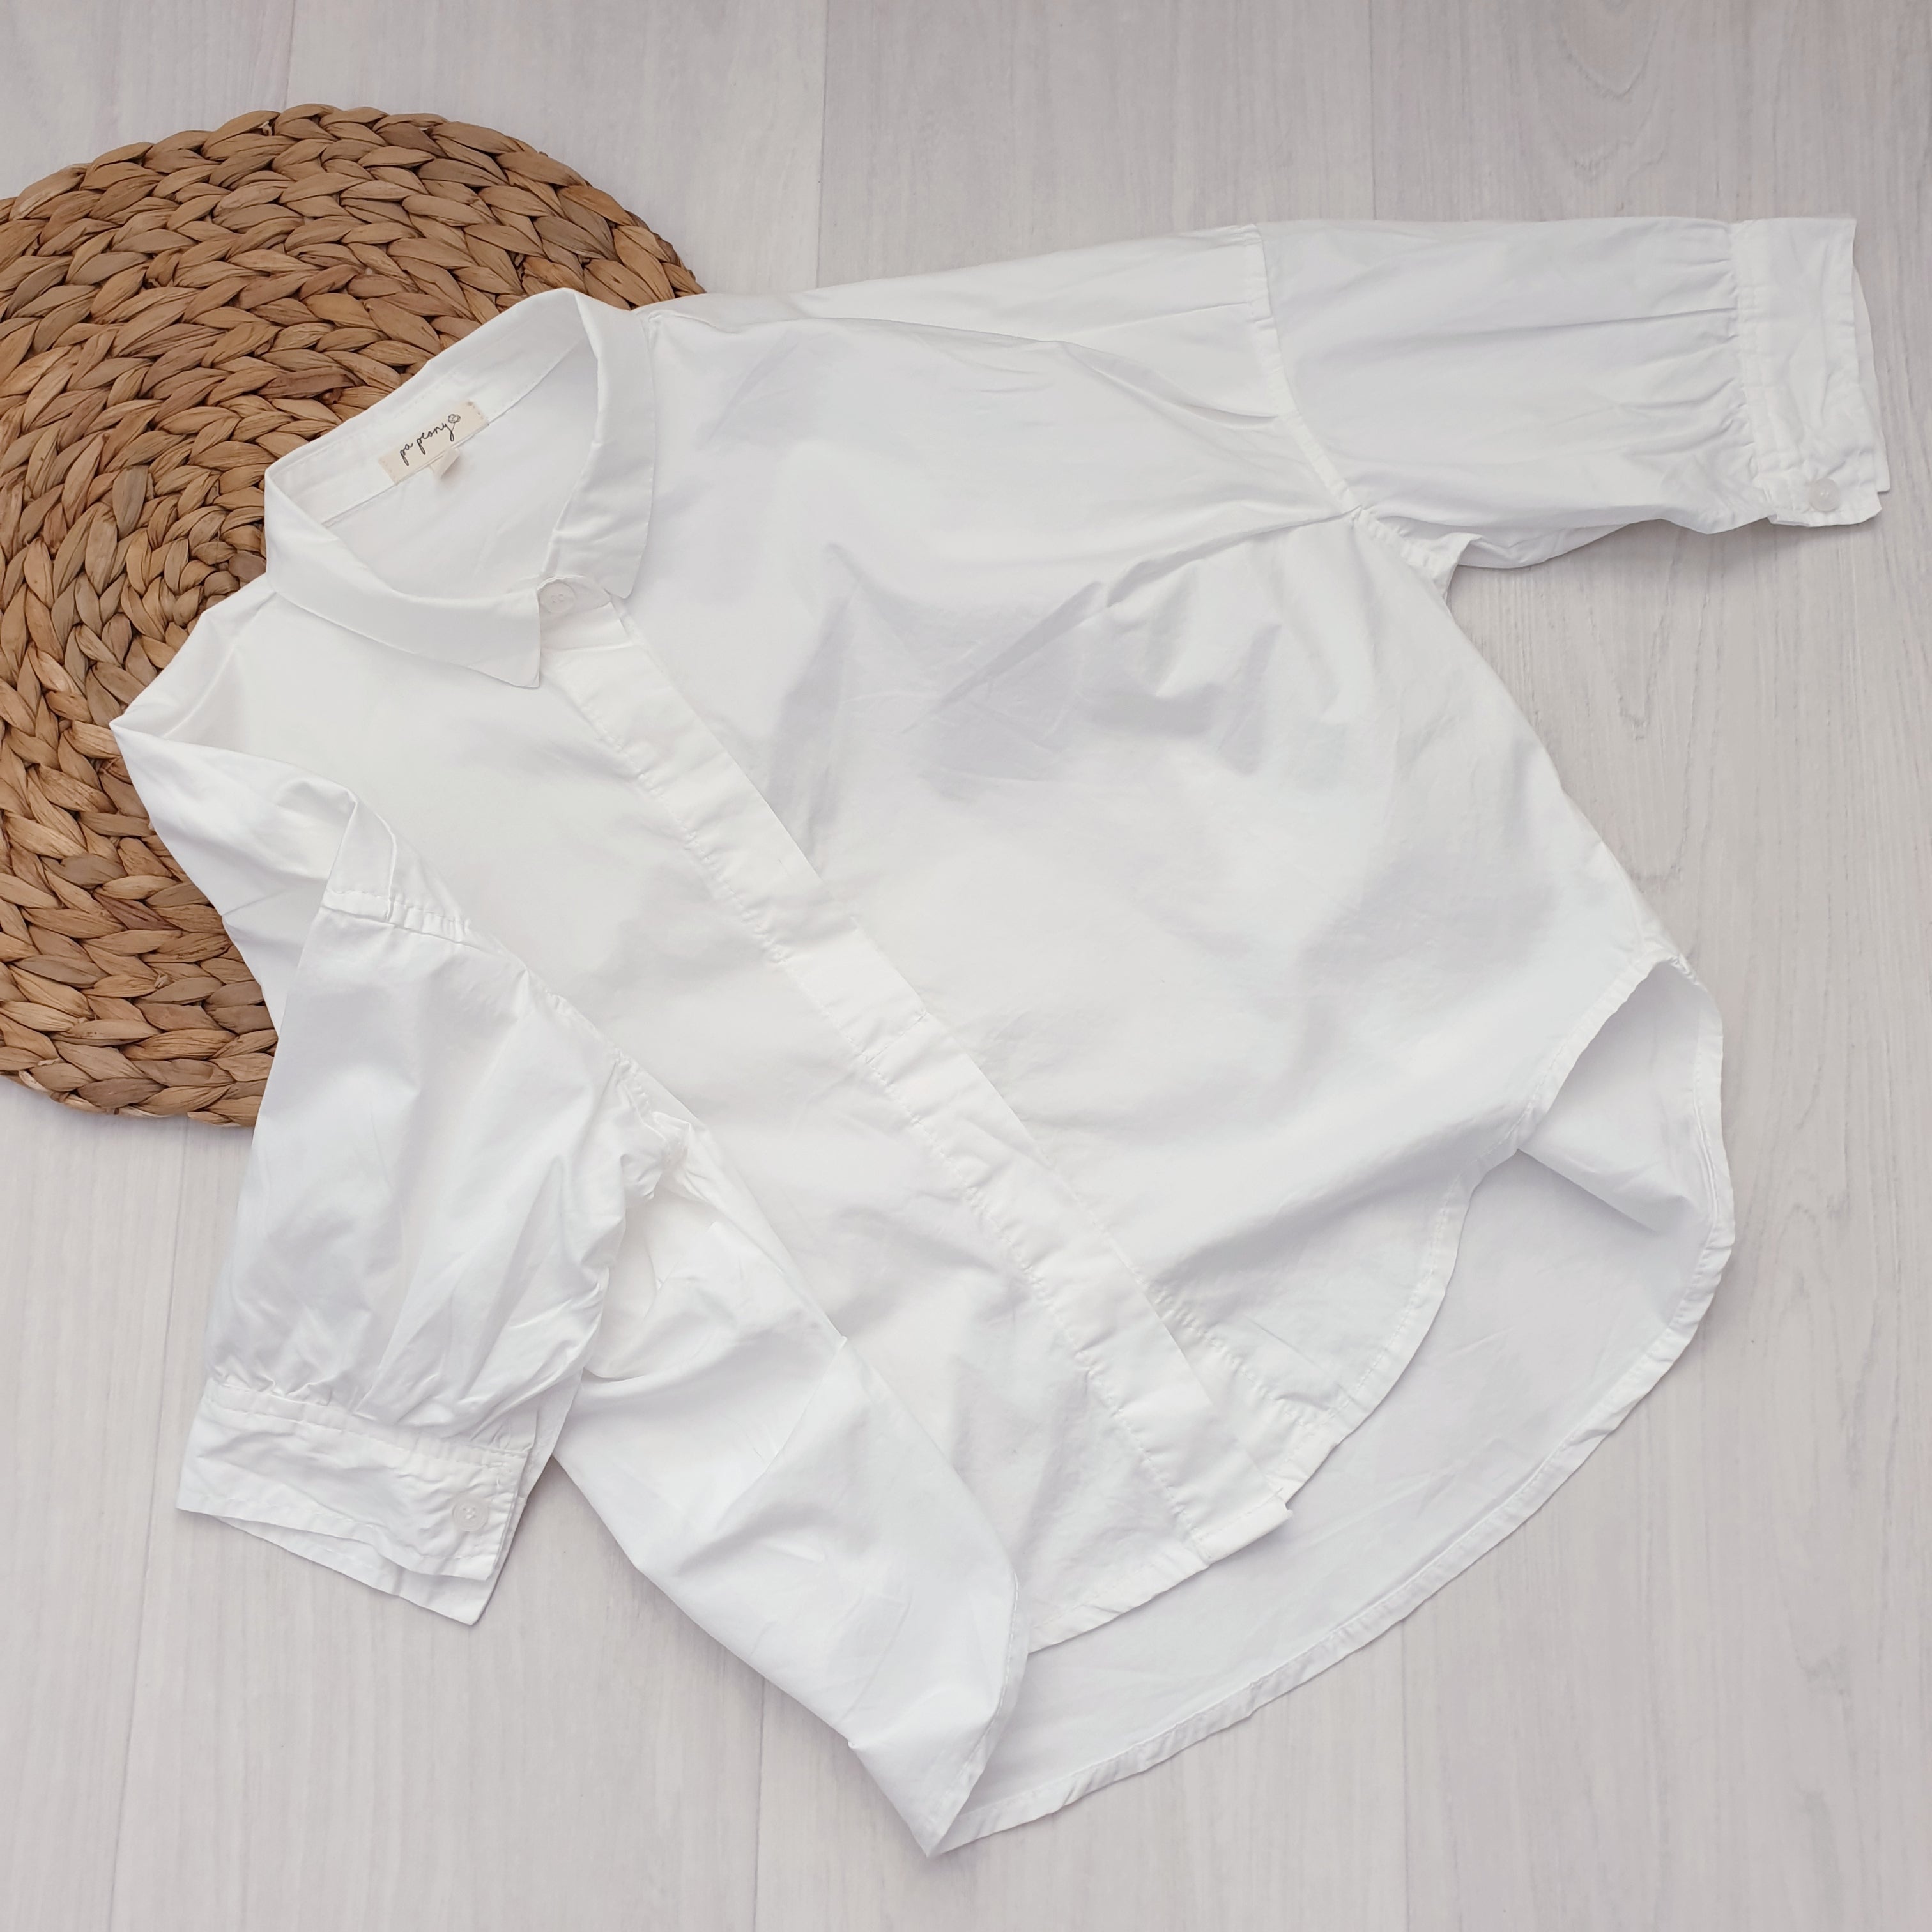 חולצה מכופתרת - עליונית (לבן) - PaPeony